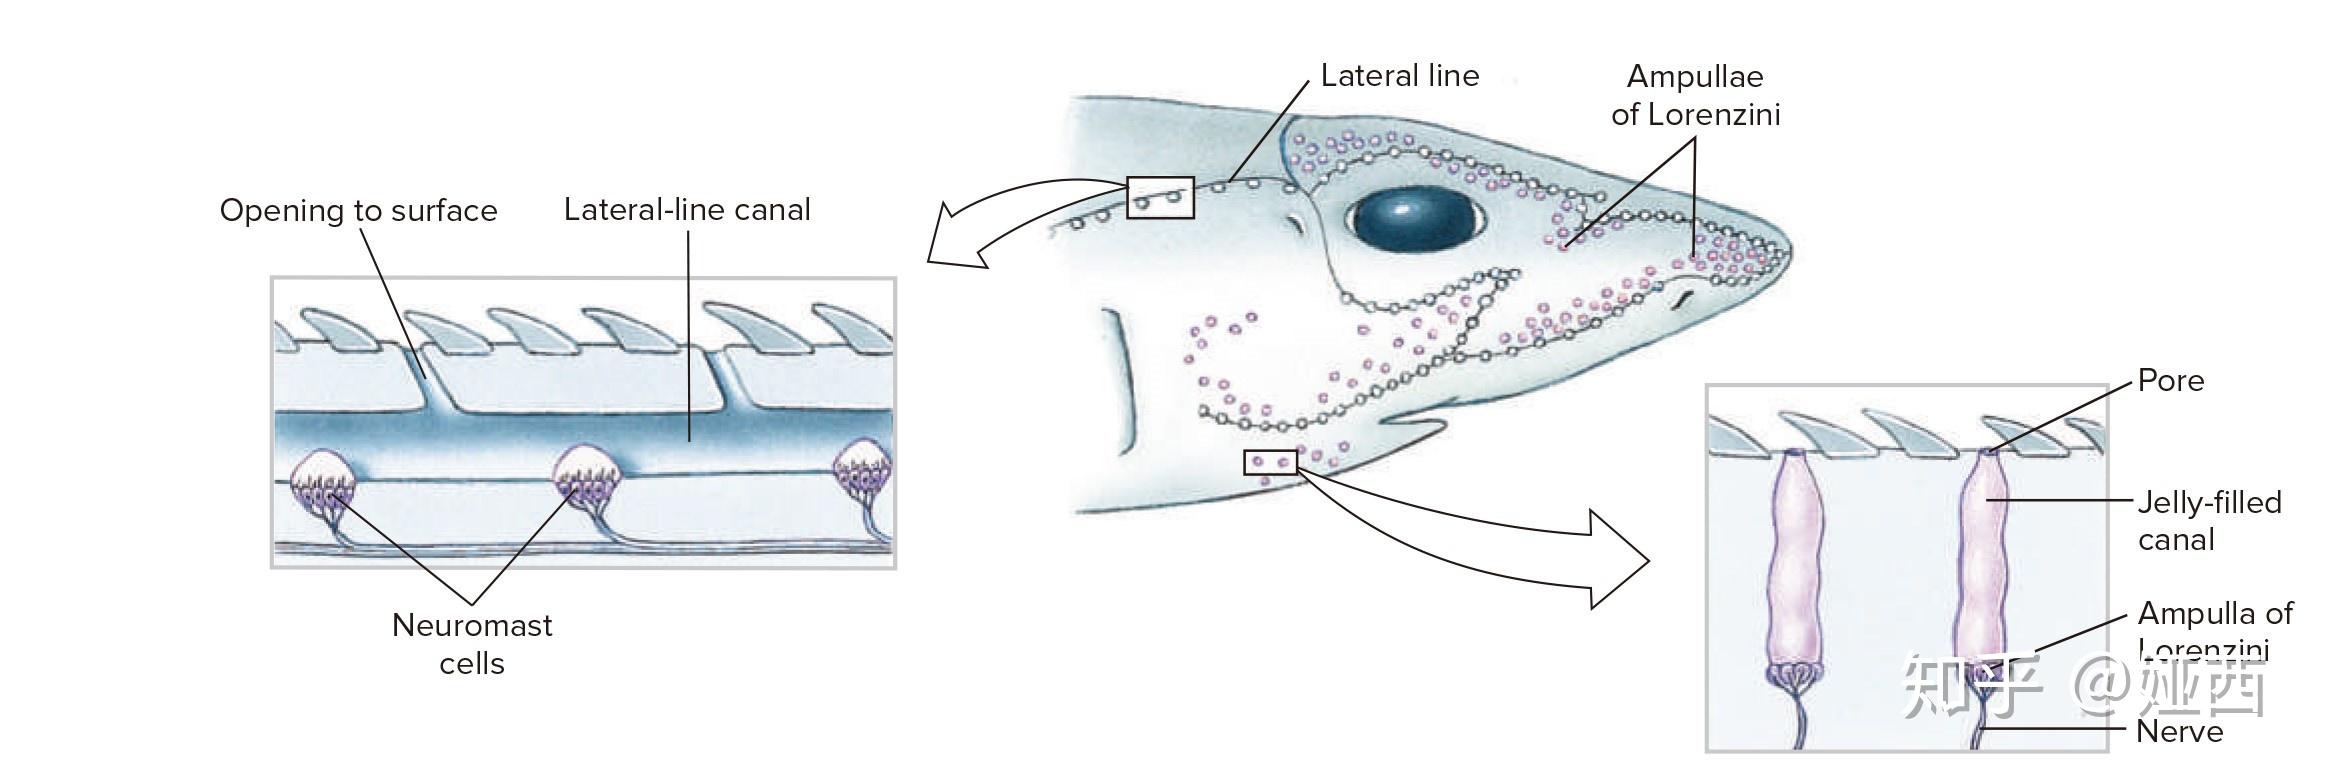 七鳃鳗的生殖系统图片